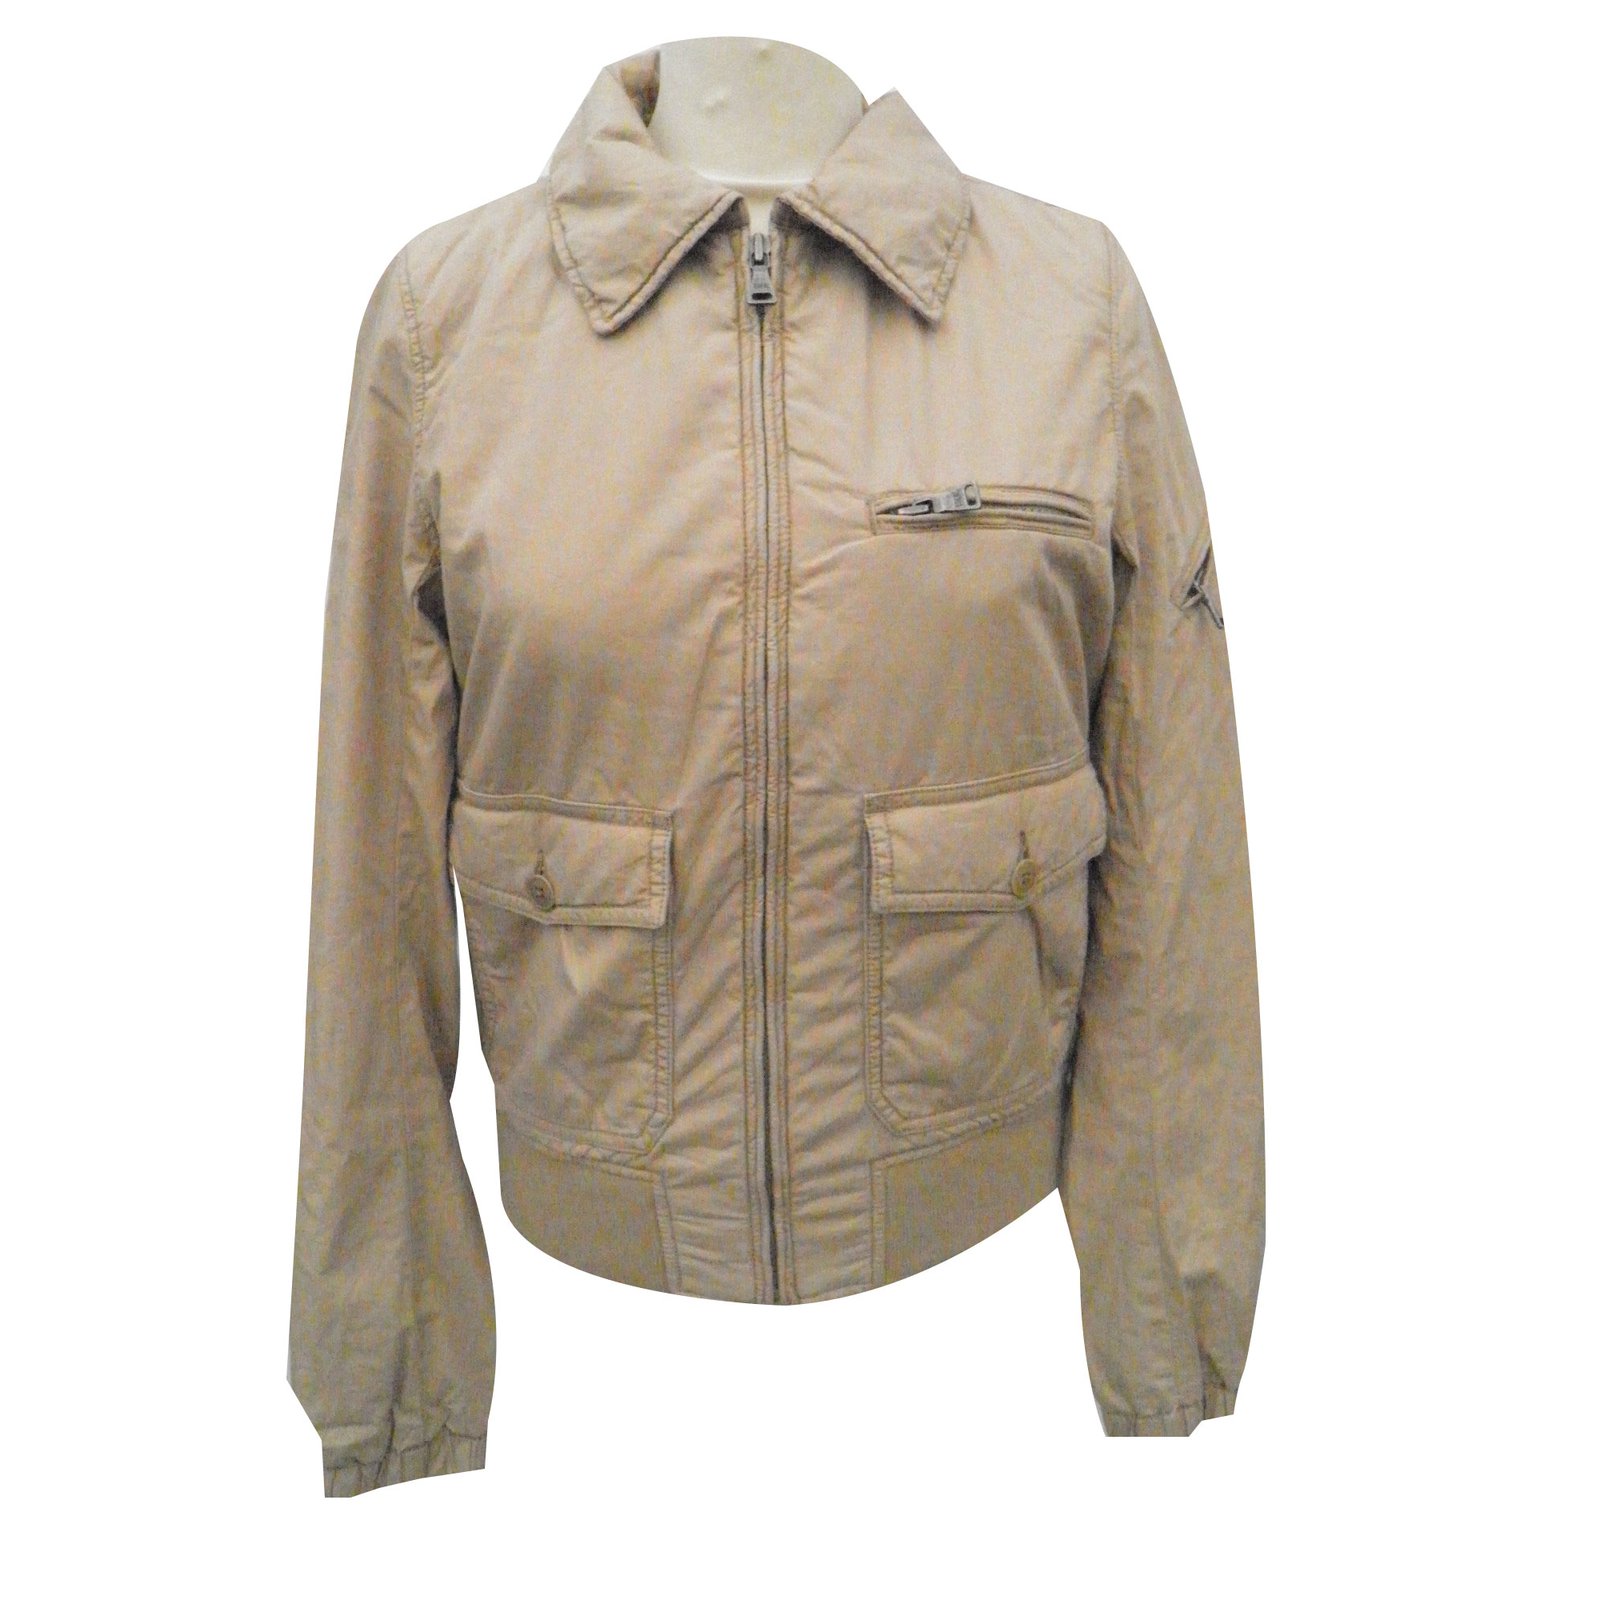 polo jacket cotton